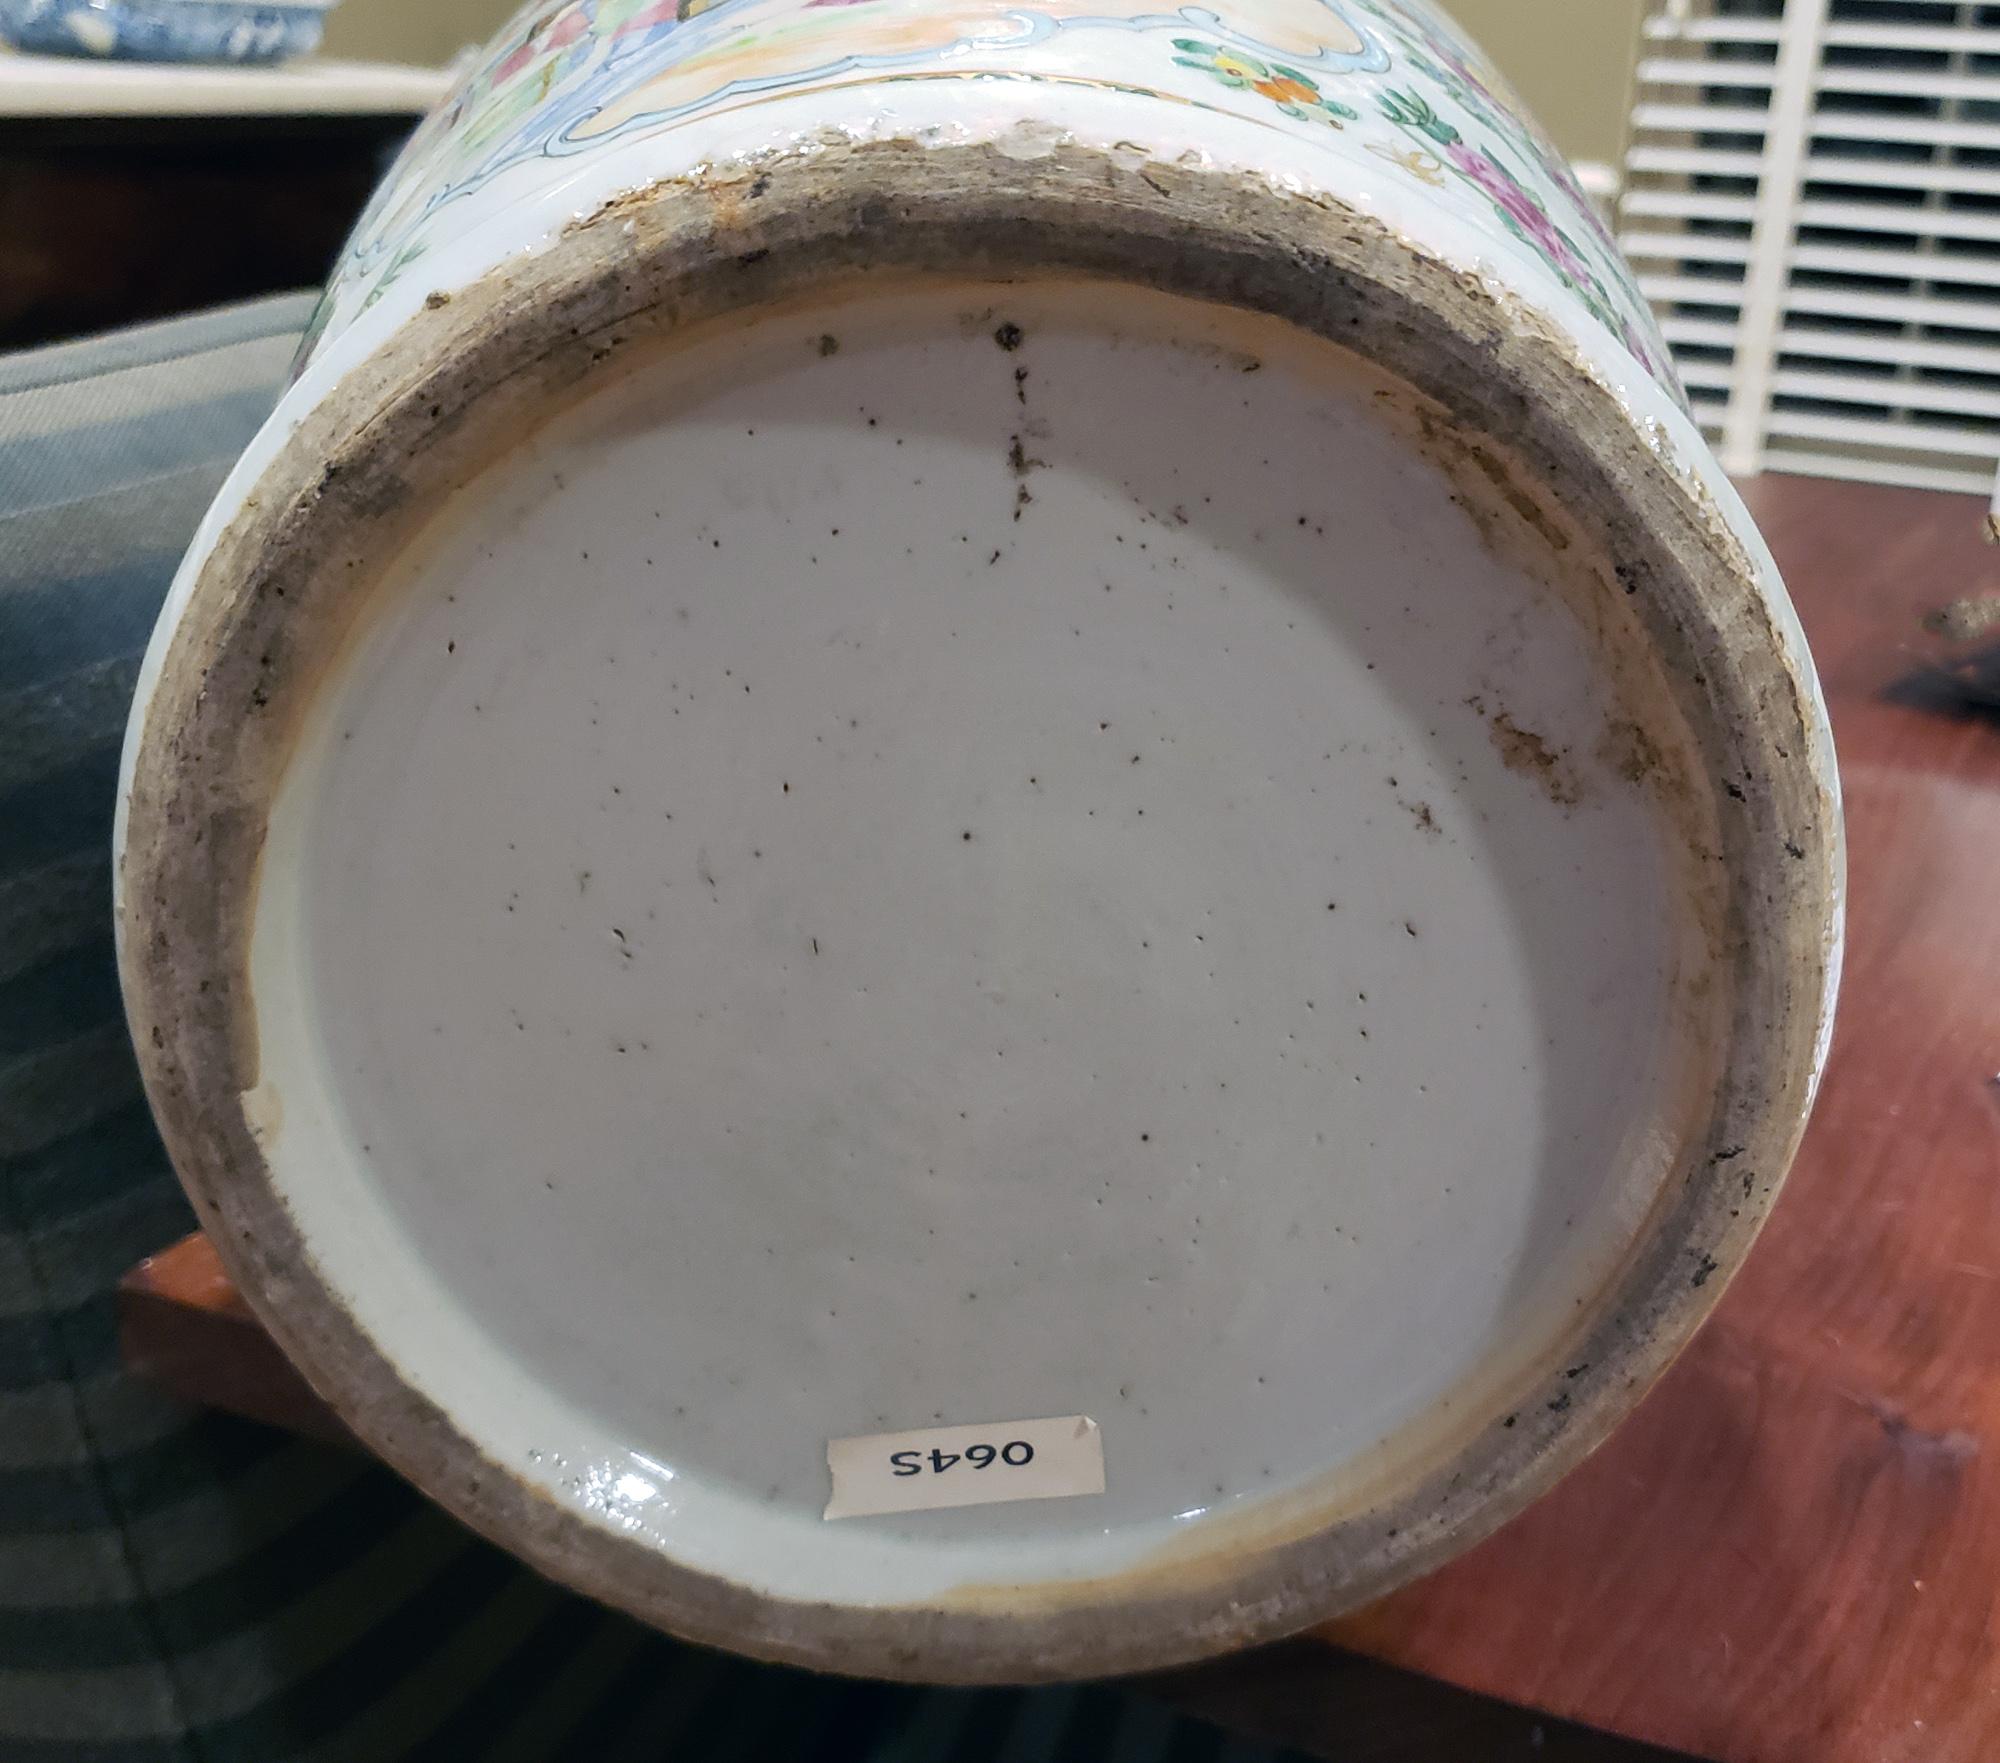 Vases à médaillon en porcelaine d'exportation chinoise,
Vers 1850-65

Les premiers vases en porcelaine à médaillon rose/mandarin rose sur fond de porcelaine blanche sont de la plus haute qualité avec des panneaux façonnés à l'avant et à